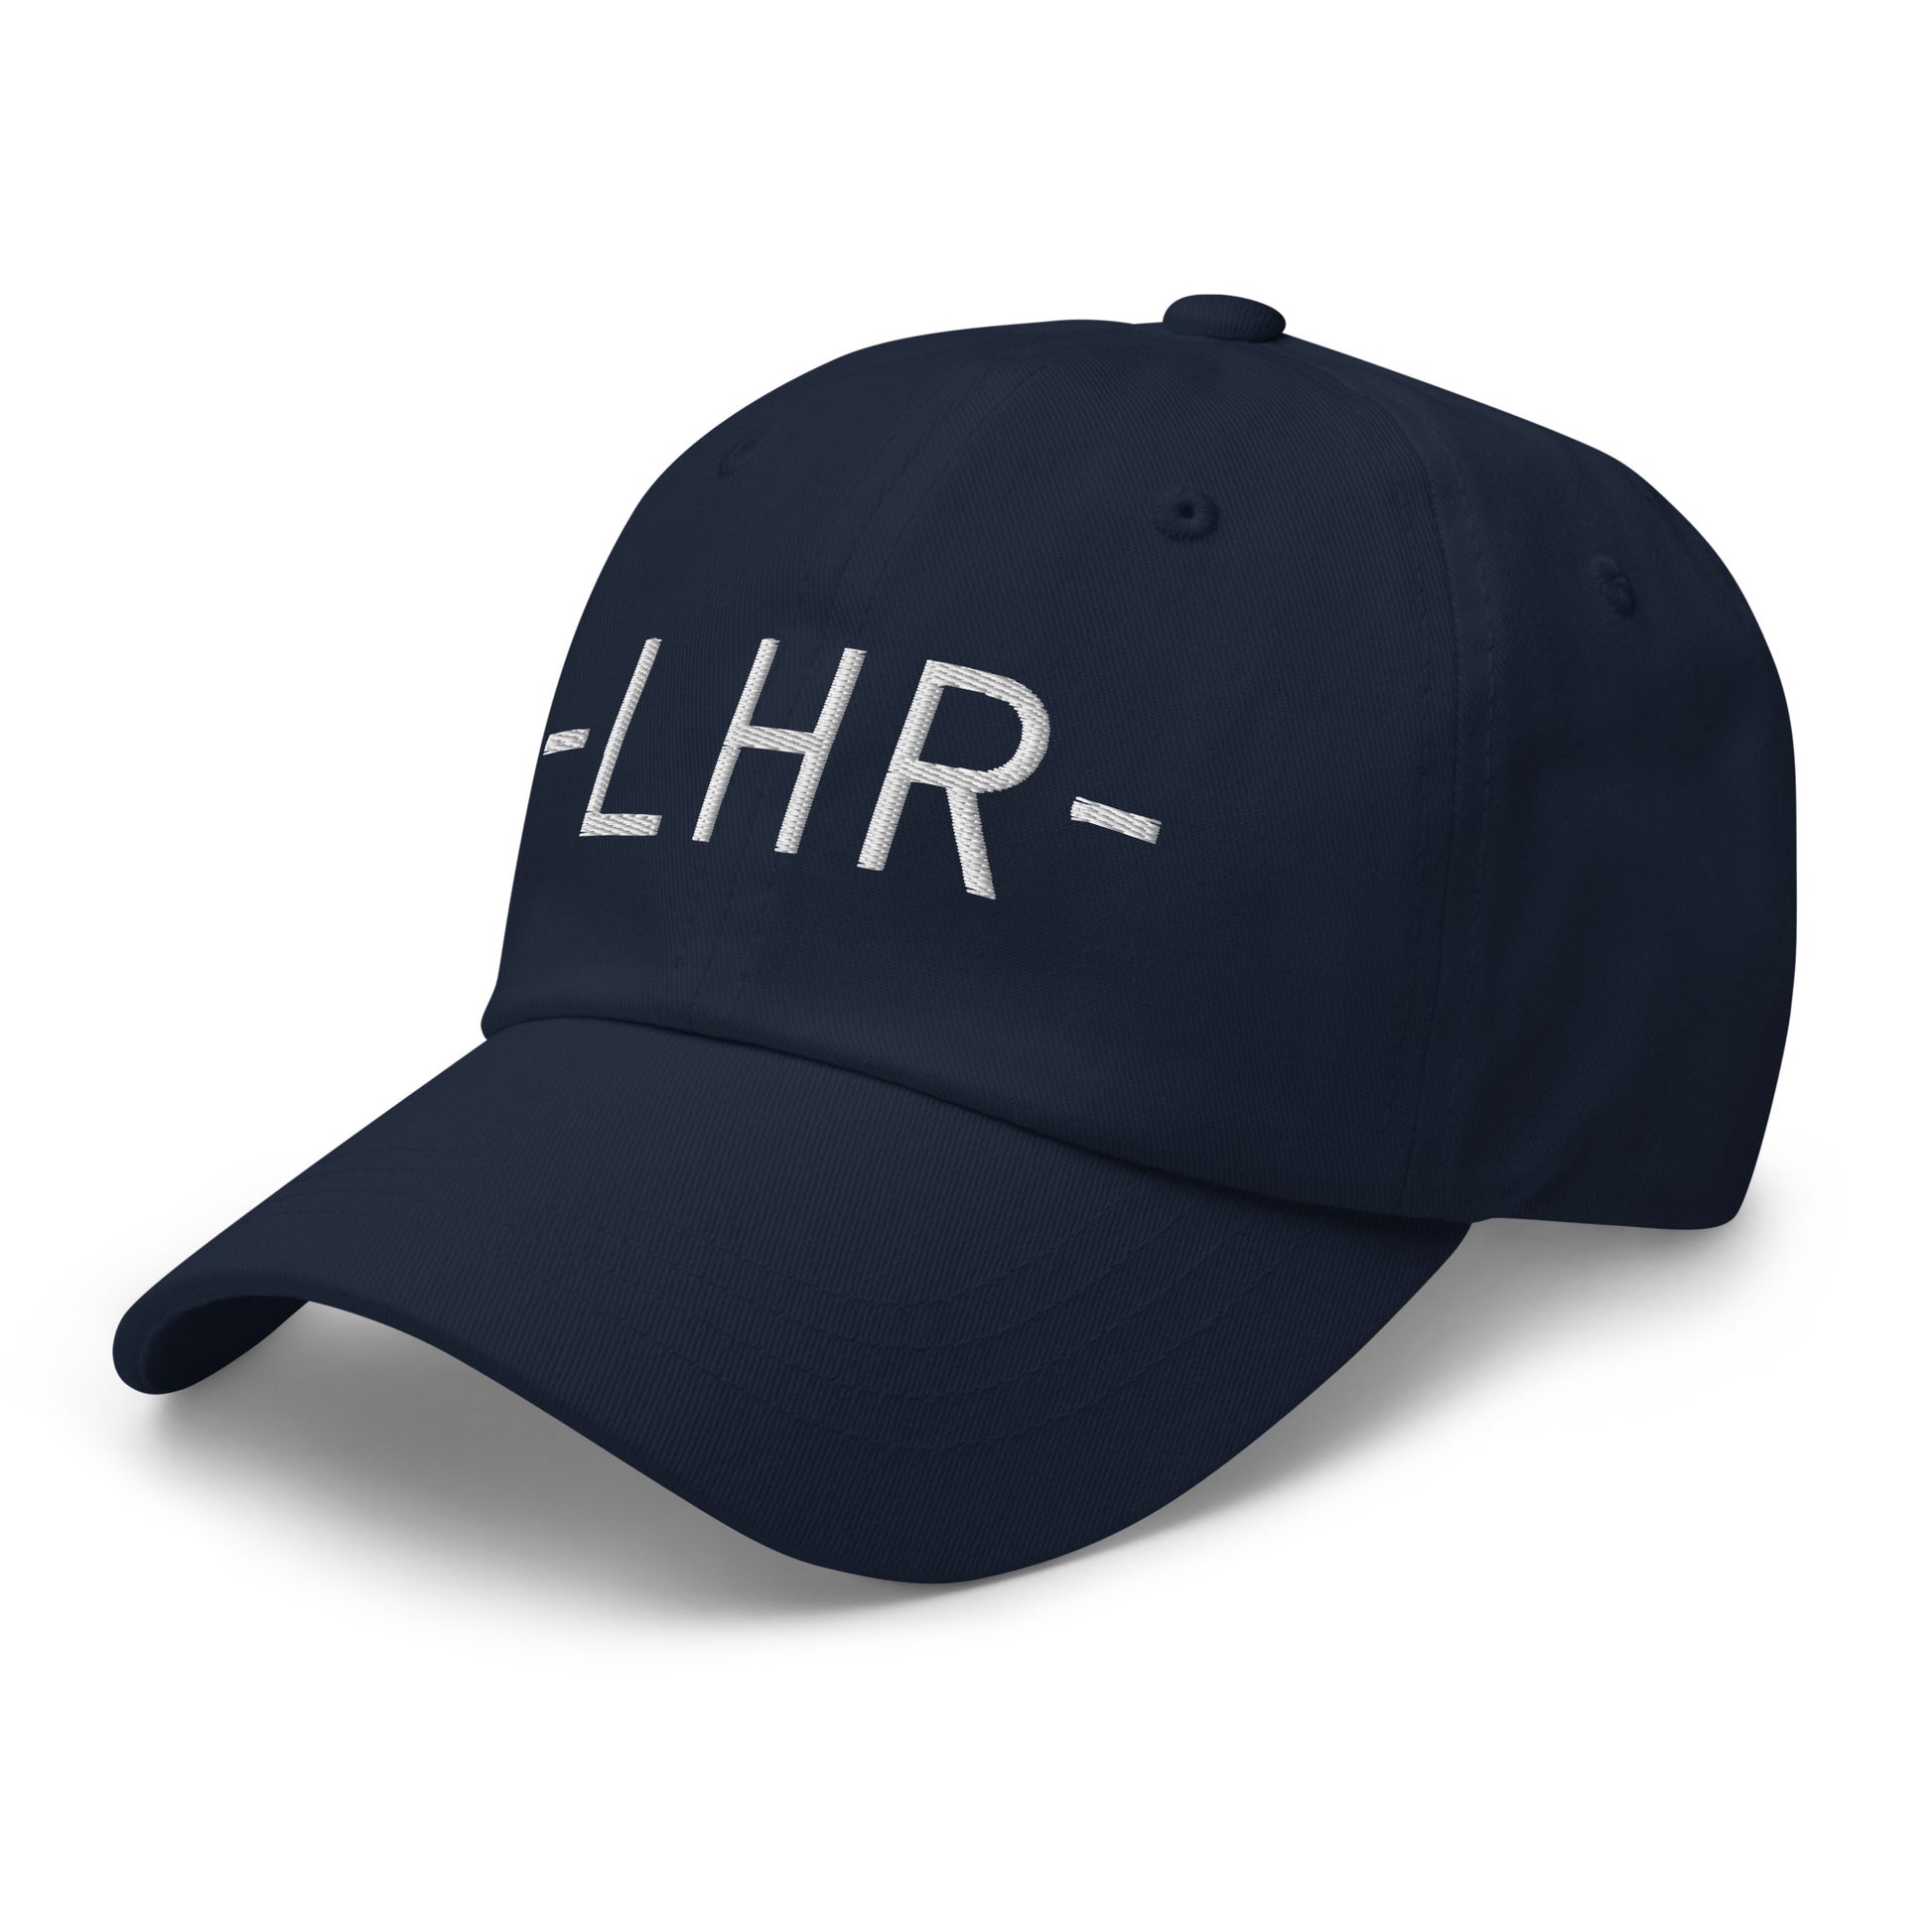 Souvenir Baseball Cap - White • LHR London • YHM Designs - Image 15